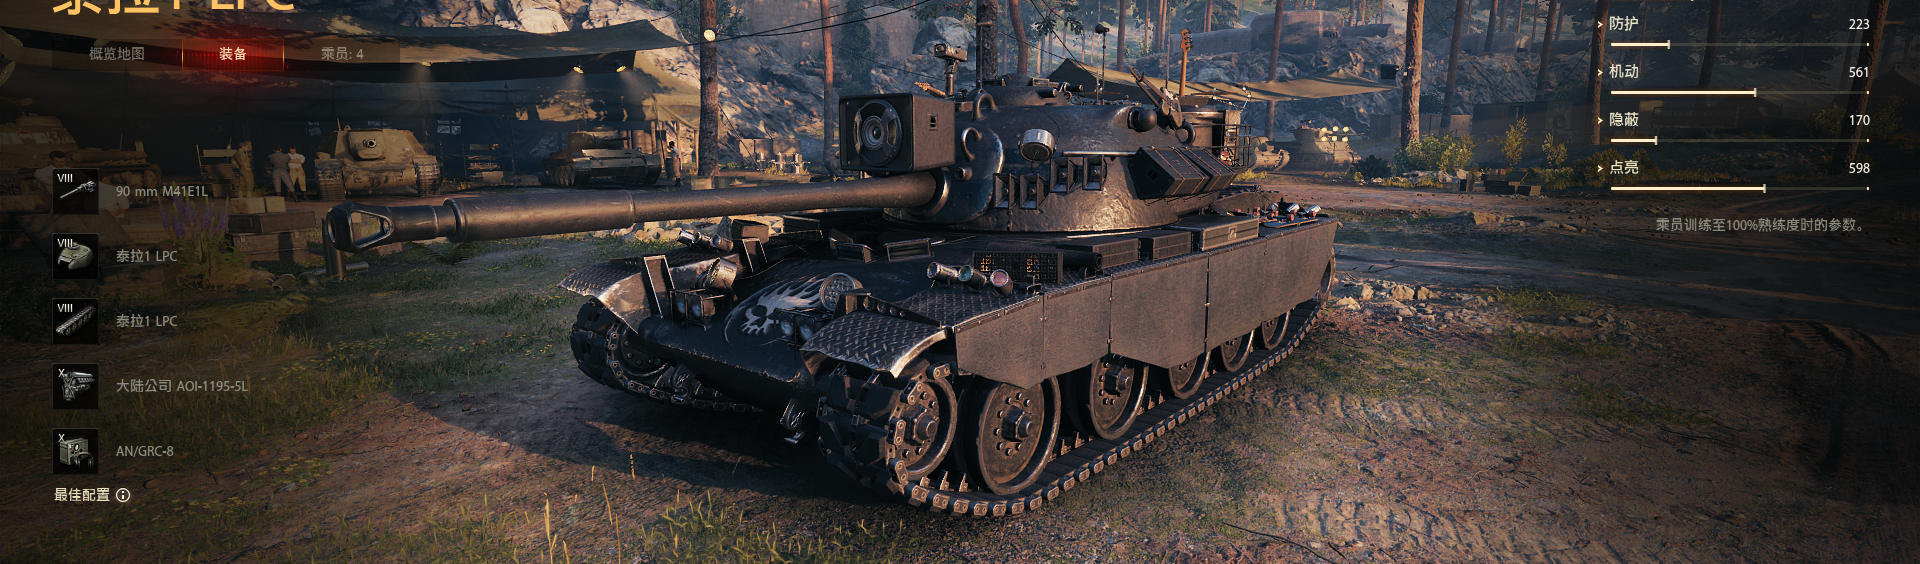 坦克世界自制mod Tl 1 Lpc 3d涂装替换mod 哔哩哔哩